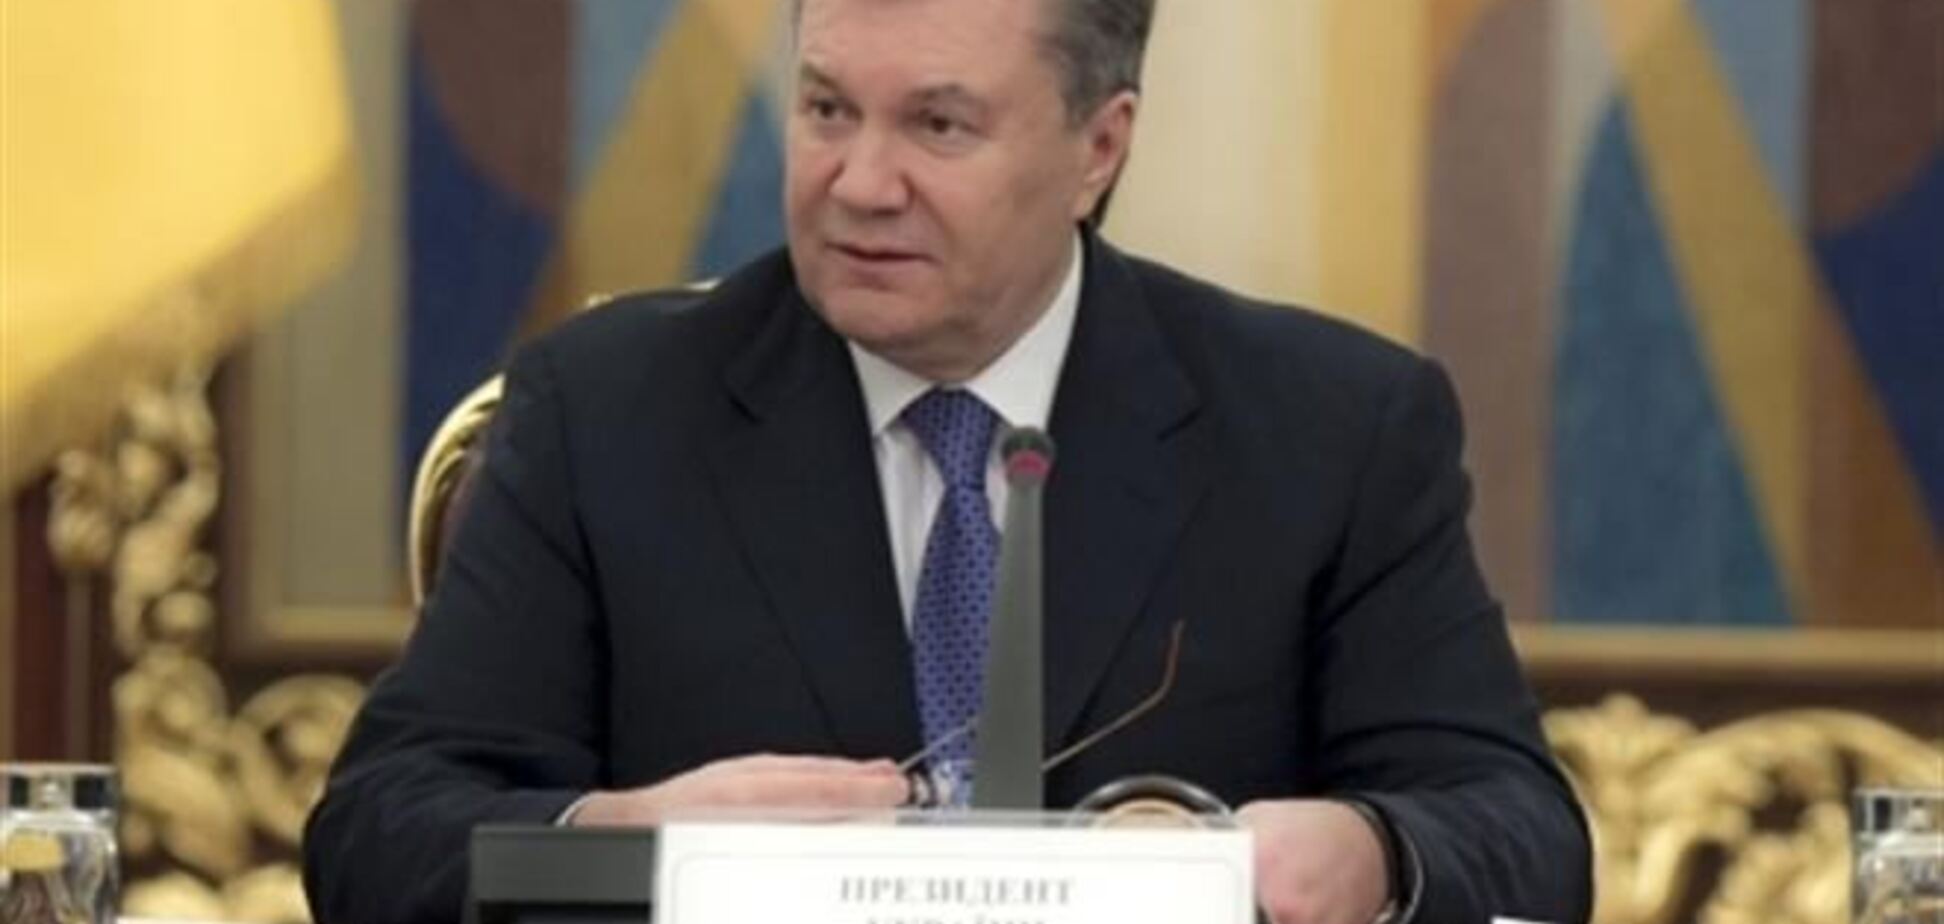 Фракция ПР в субботу встречается с Януковичем